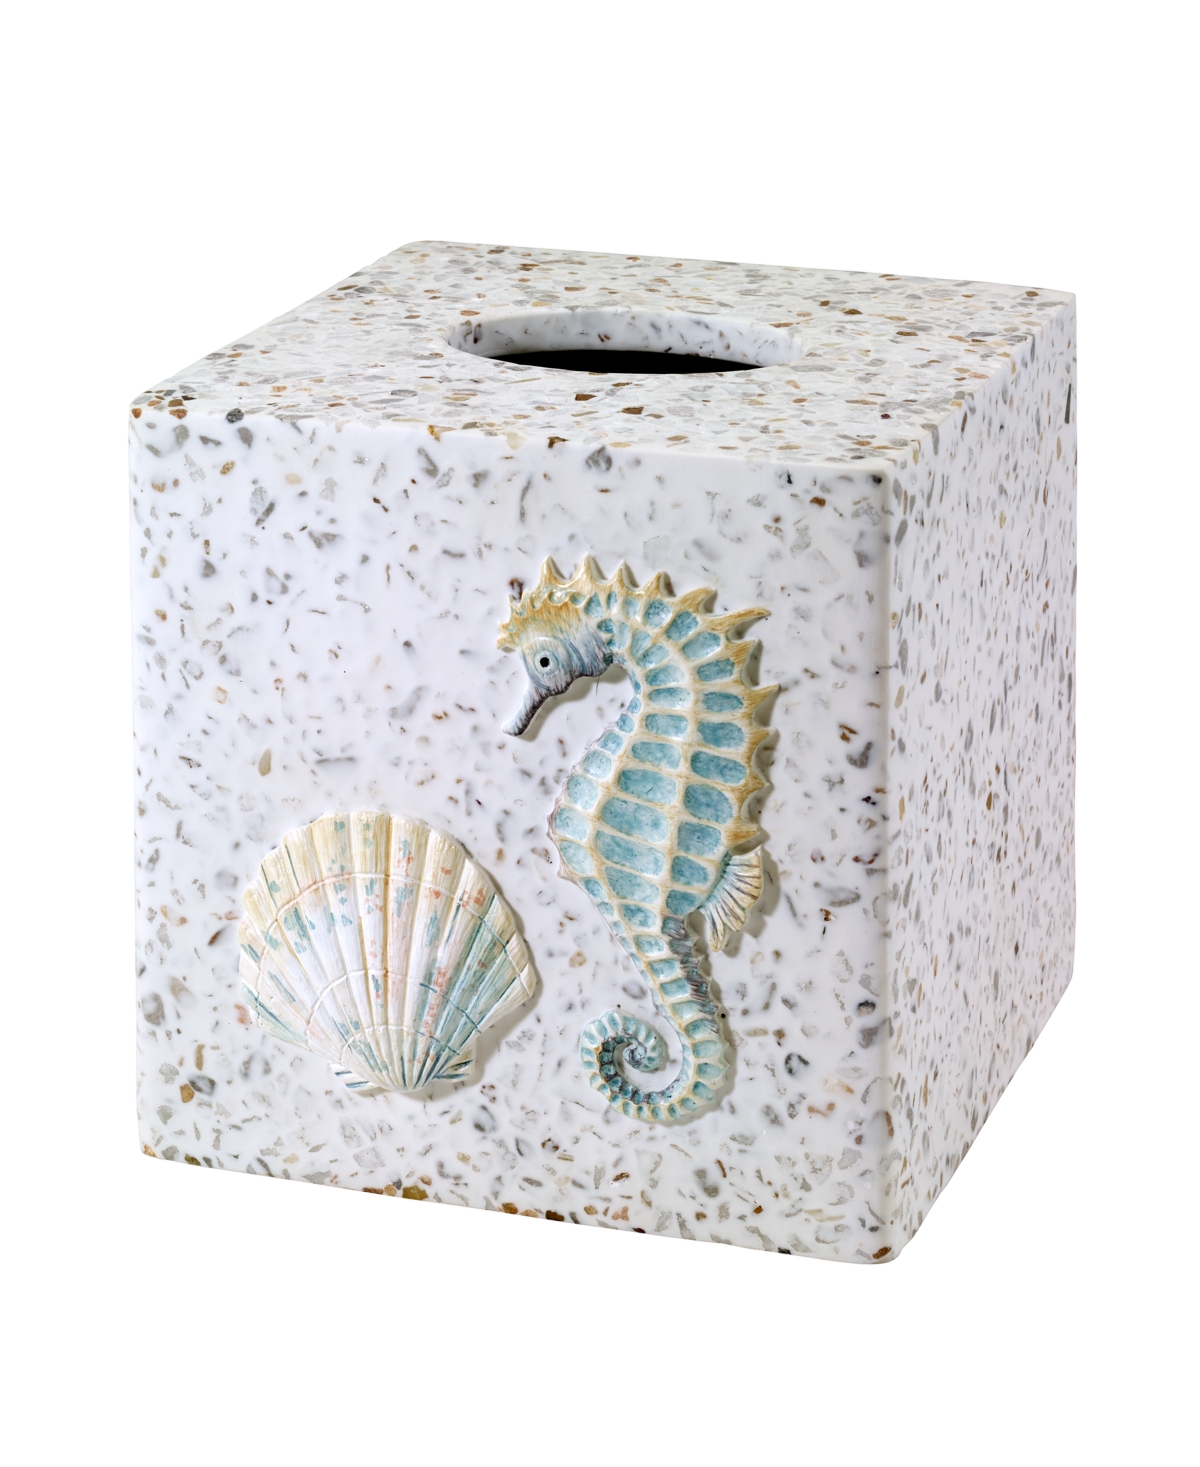 Coastal Terrazzo Stone Chips Resin Tissue Box Cover - Multi